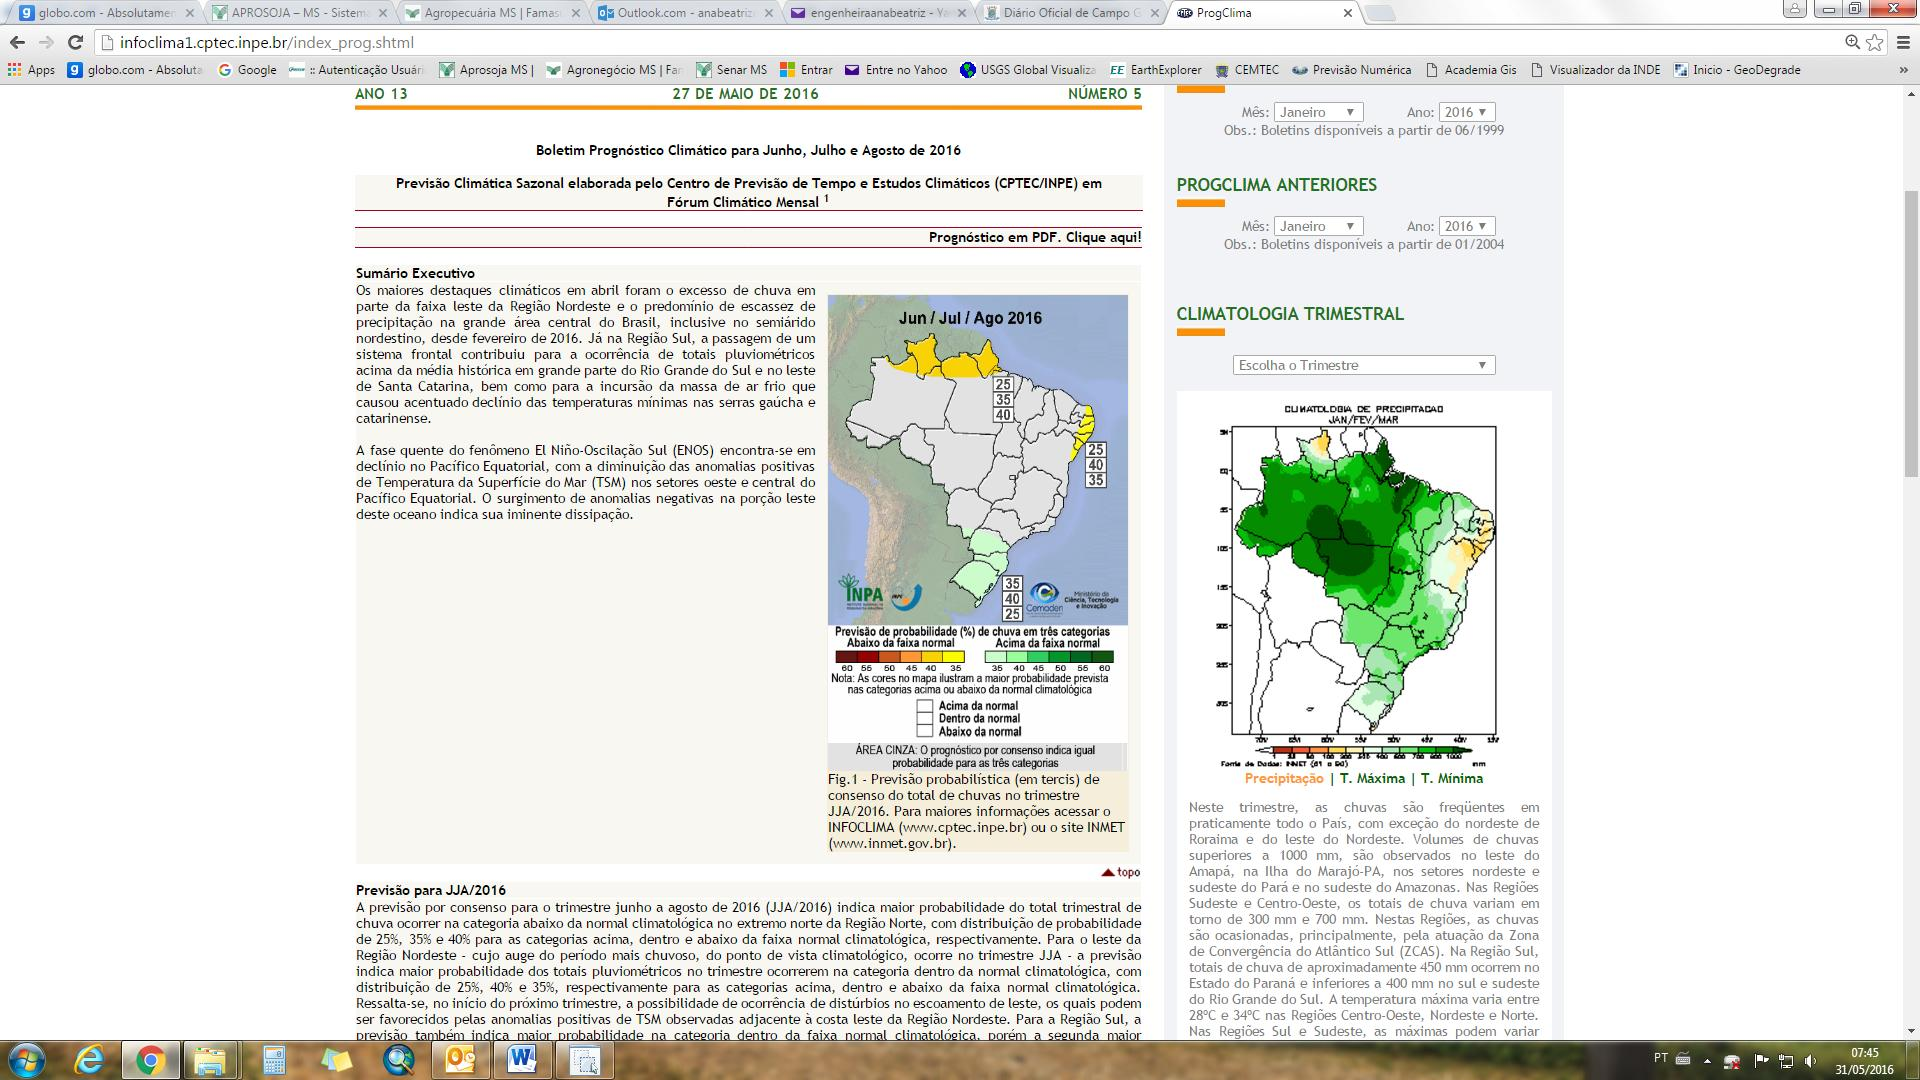 De acordo com o Prognóstico Climático para Junho, Julho e Agosto (JJA) de 2016 (figura 02), as chuvas para as regiões produtoras de Mato Grosso do Sul, devem permanecer entre as faixas de 25 a 300mm.